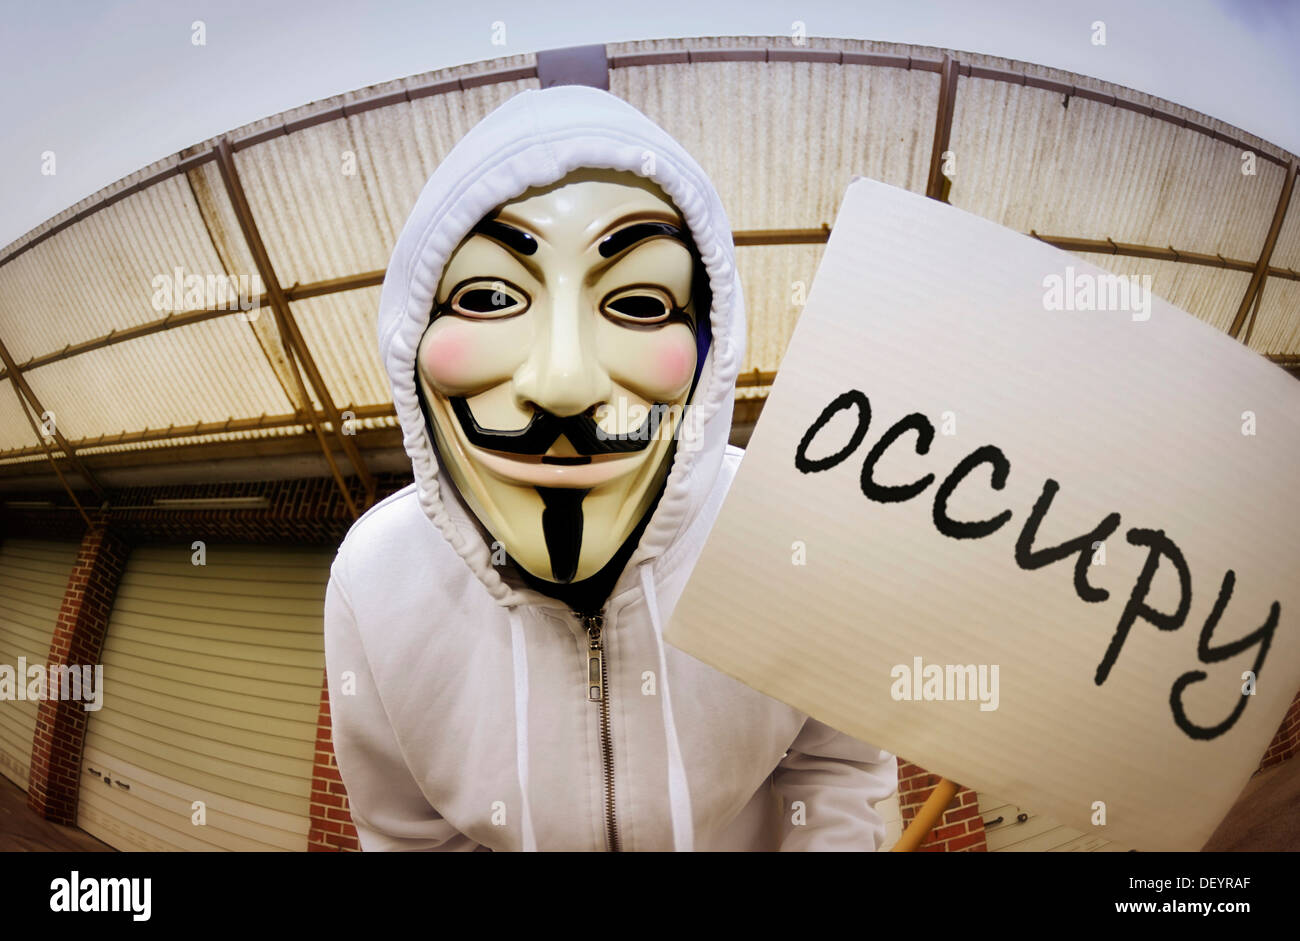 Mann trägt die Guy Fawkes Maske anhand der Occupy-Bewegung mit einem  Protest-Schild, protestieren gegen die Macht der Banken Stockfotografie -  Alamy